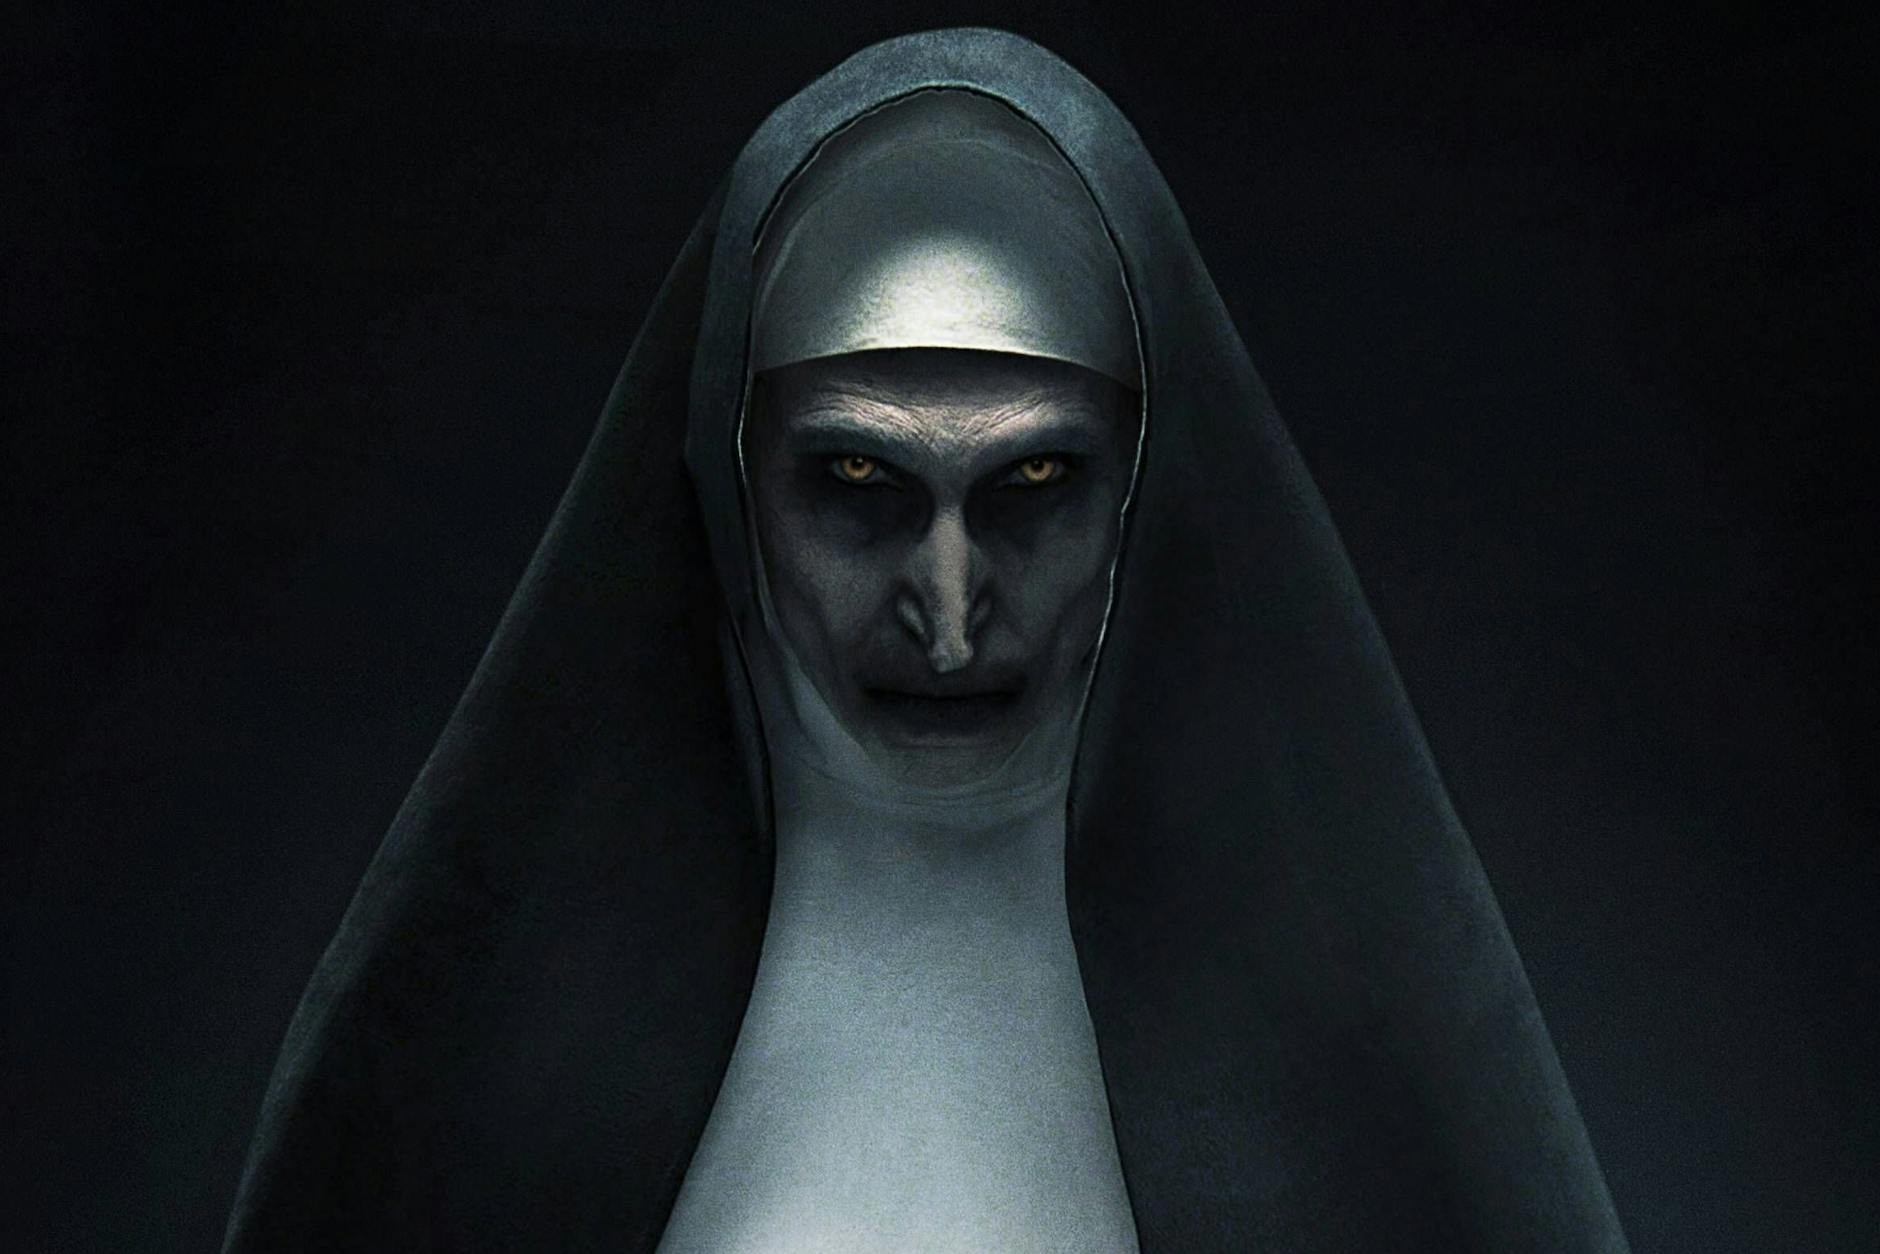 Schauspielerin Bonnie Aarons spielt die gruselige Nonne in „The Nun“ und „The Nun 2“.